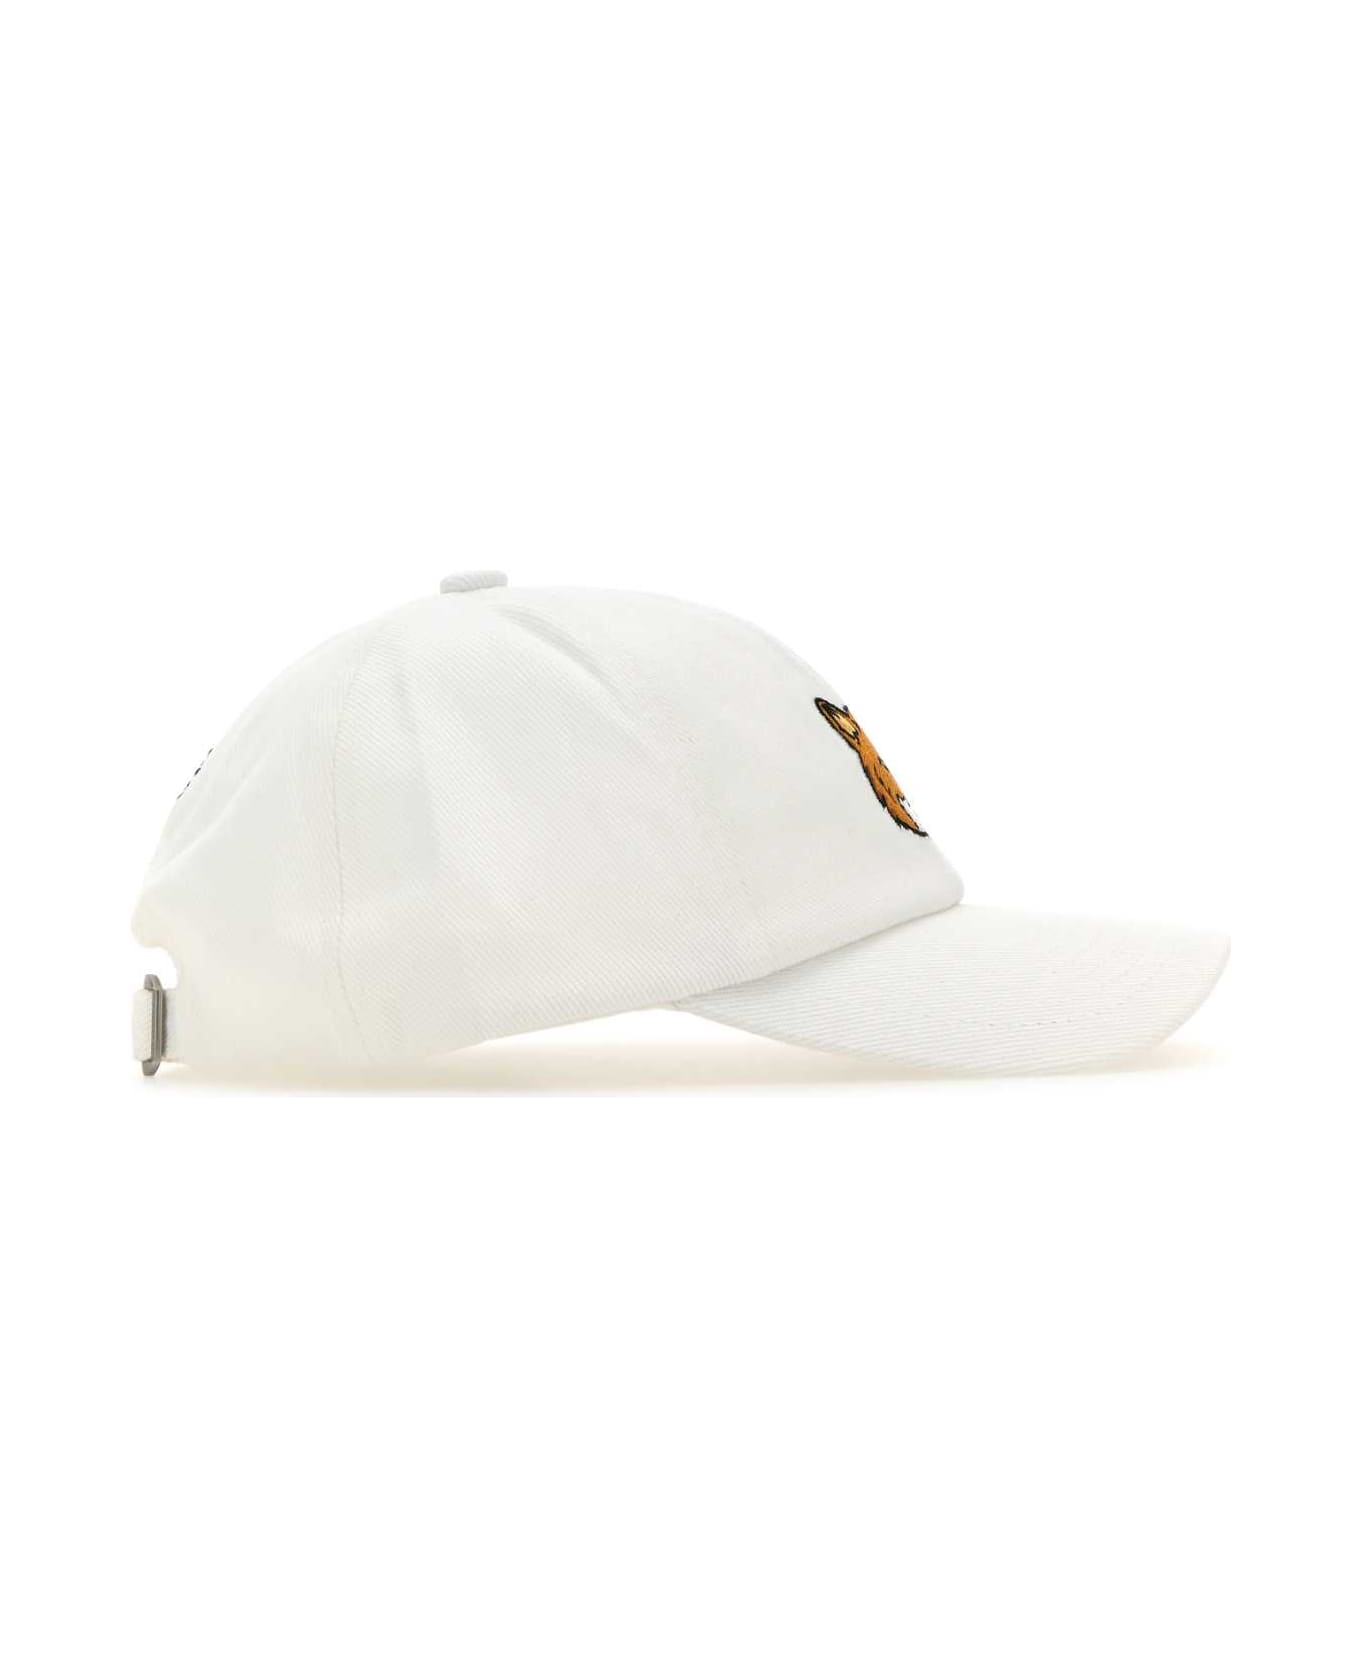 Maison Kitsuné White Cotton Baseball Cap - WHITE 帽子